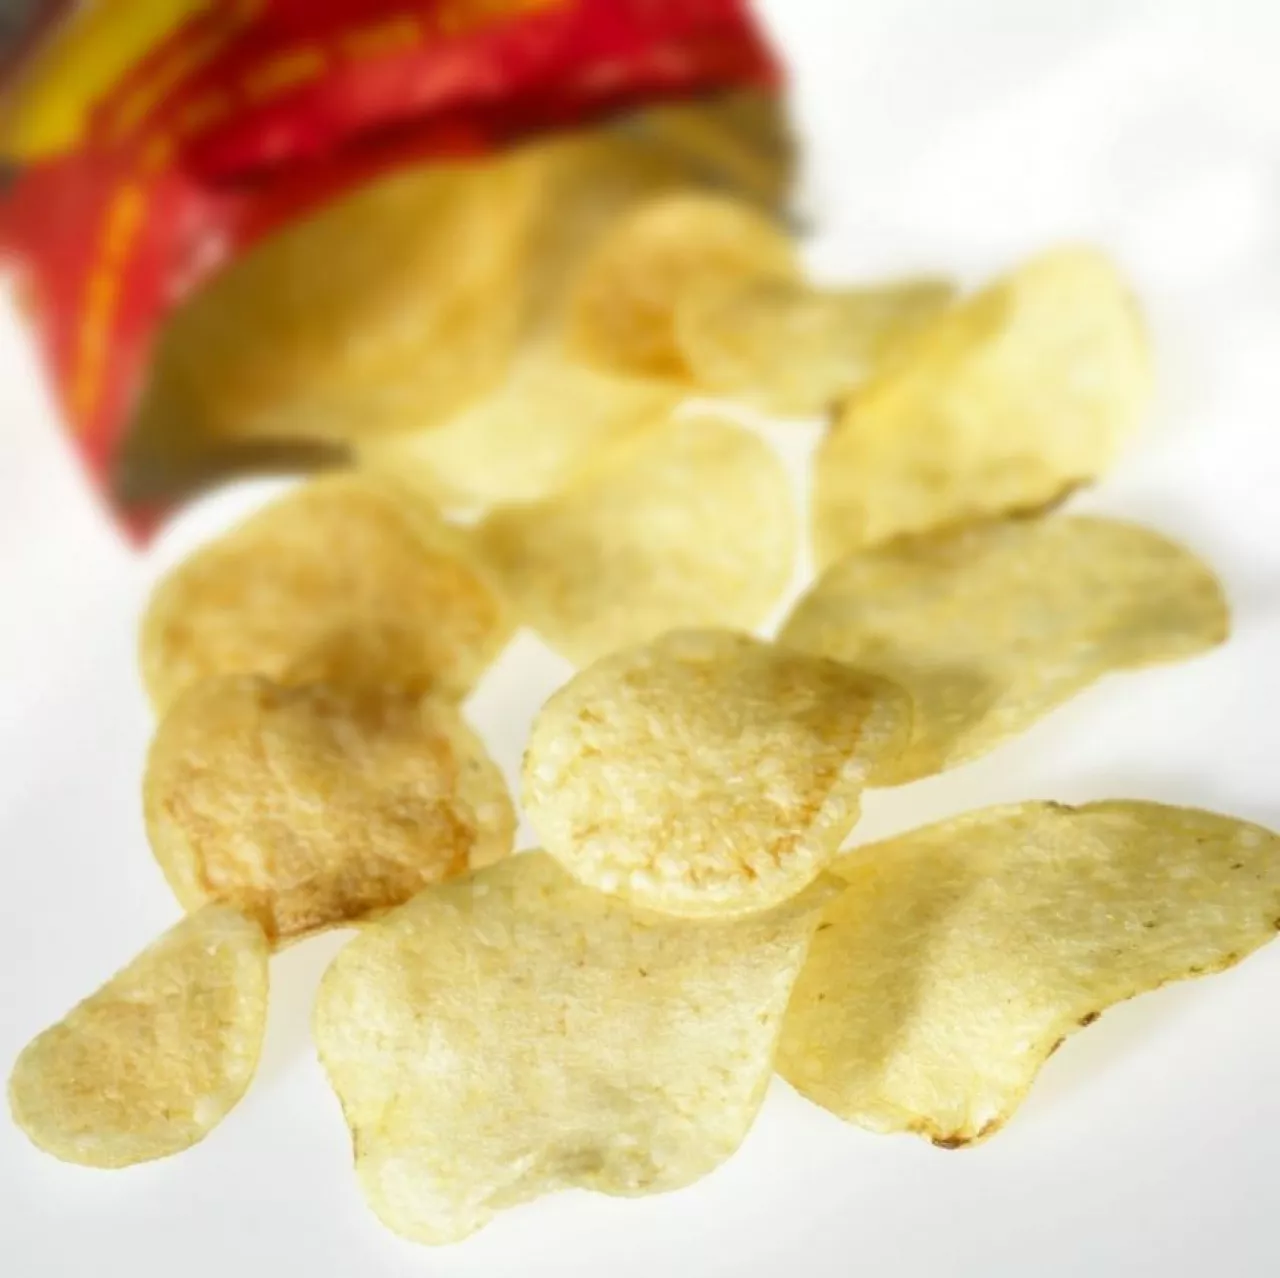 Fifor Polska produkuje w Radomiu chrupki i chipsy (fot. materiały własne)